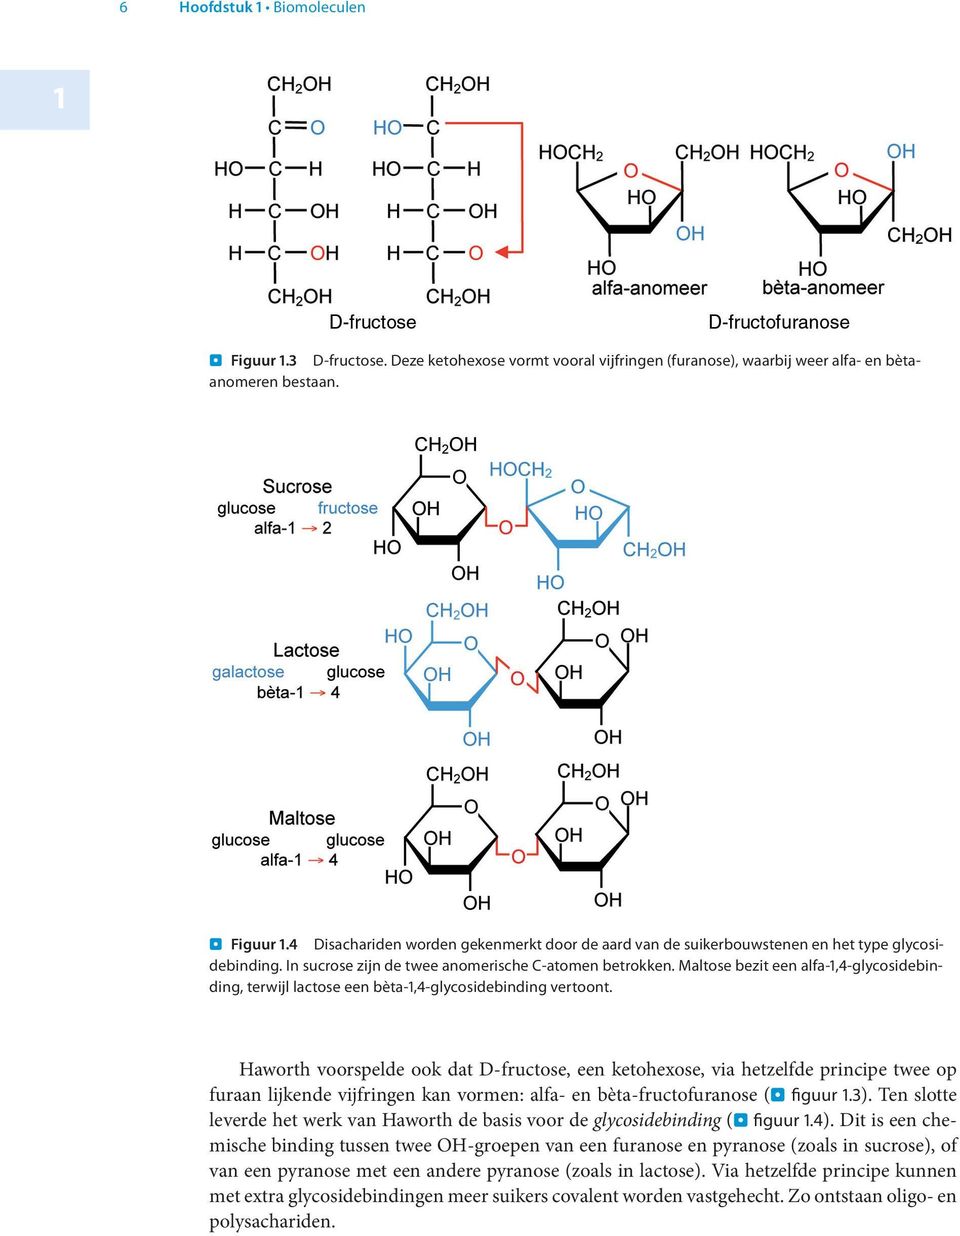 Haworth voorspelde ook dat D-fructose, een ketohexose, via hetzelfde principe twee op furaan lijkende vijfringen kan vormen: alfa- en bèta-fructofuranose (. figuur 1.3).